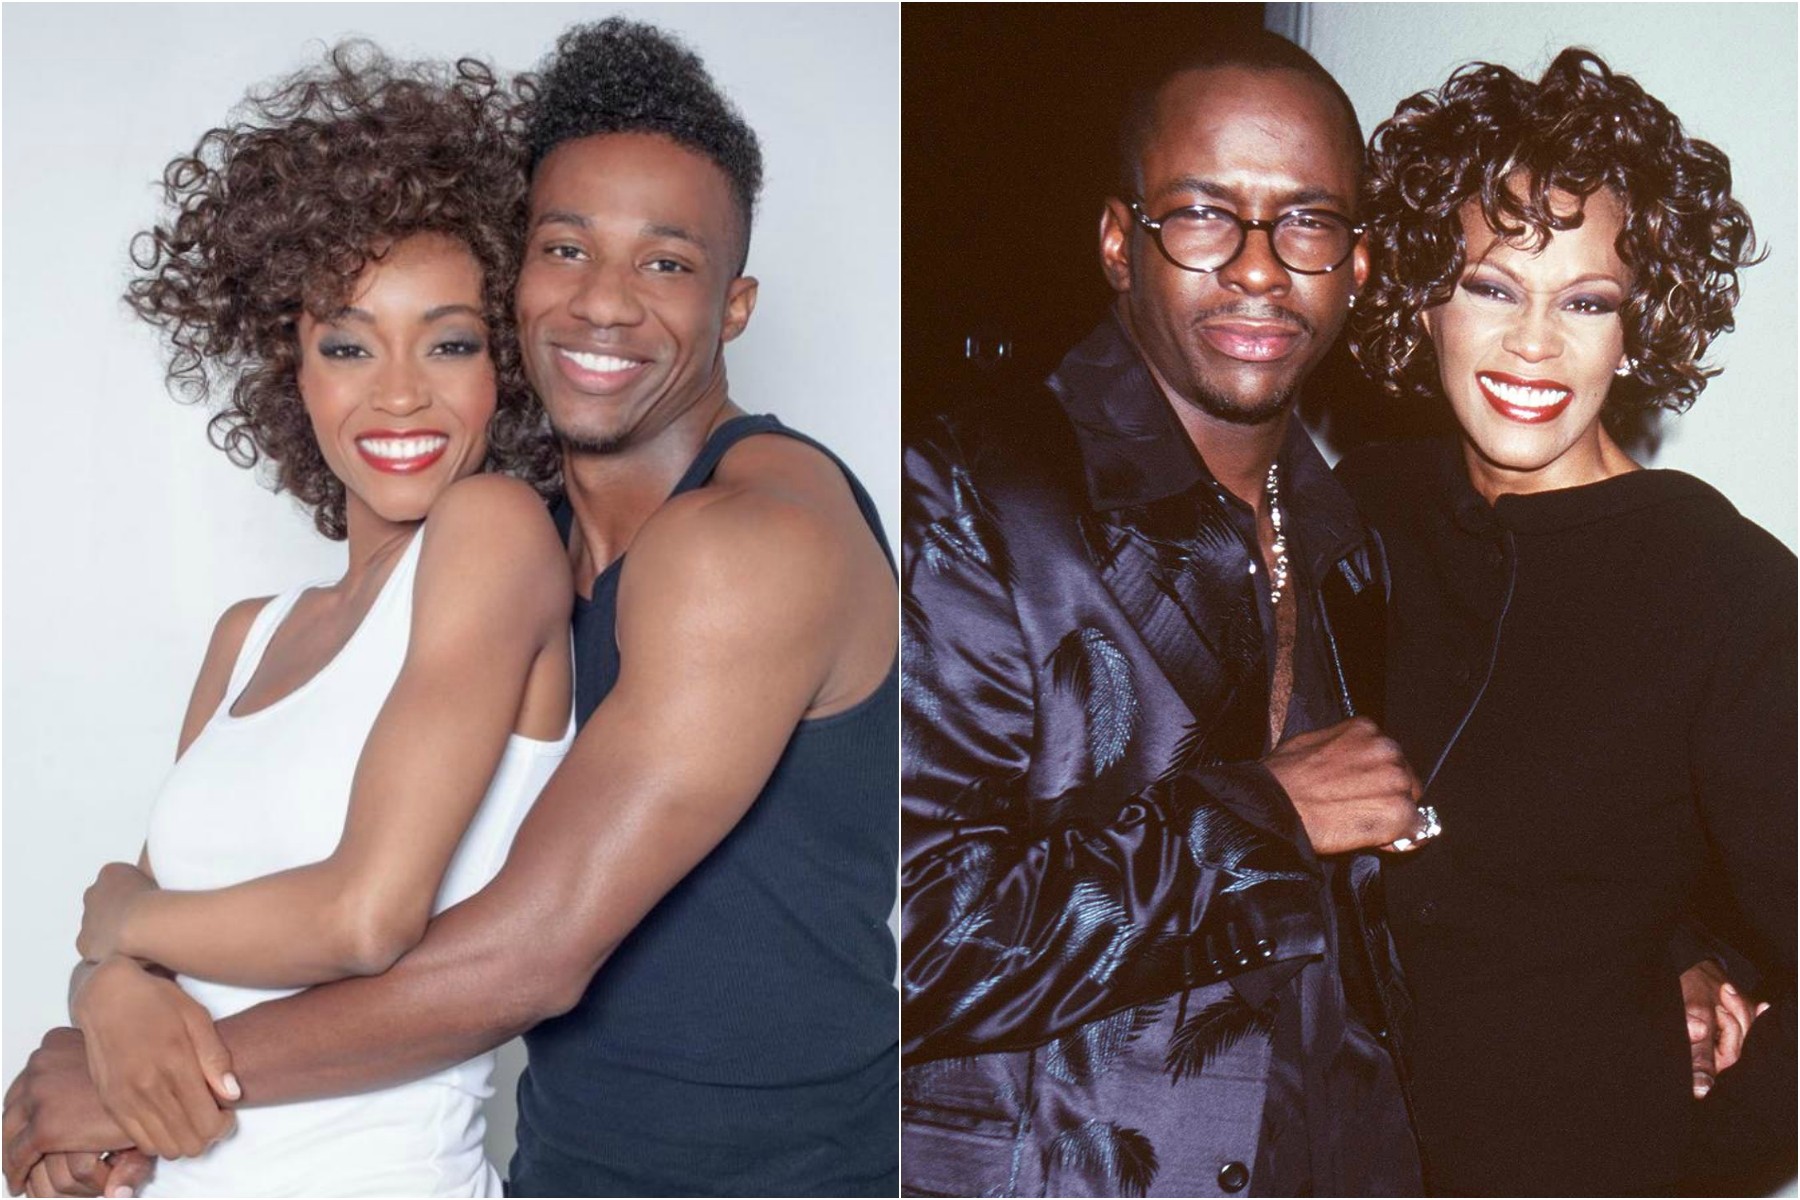 Yaya DaCosta e Arlen Escarpeta (ambos à esq.) caracterizados como Whitney Houston e Bobby Brown, que por sua vez aparecem juntos na foto da direita, feita em setembro de 1997. (Foto: Divulgação e Getty Images)